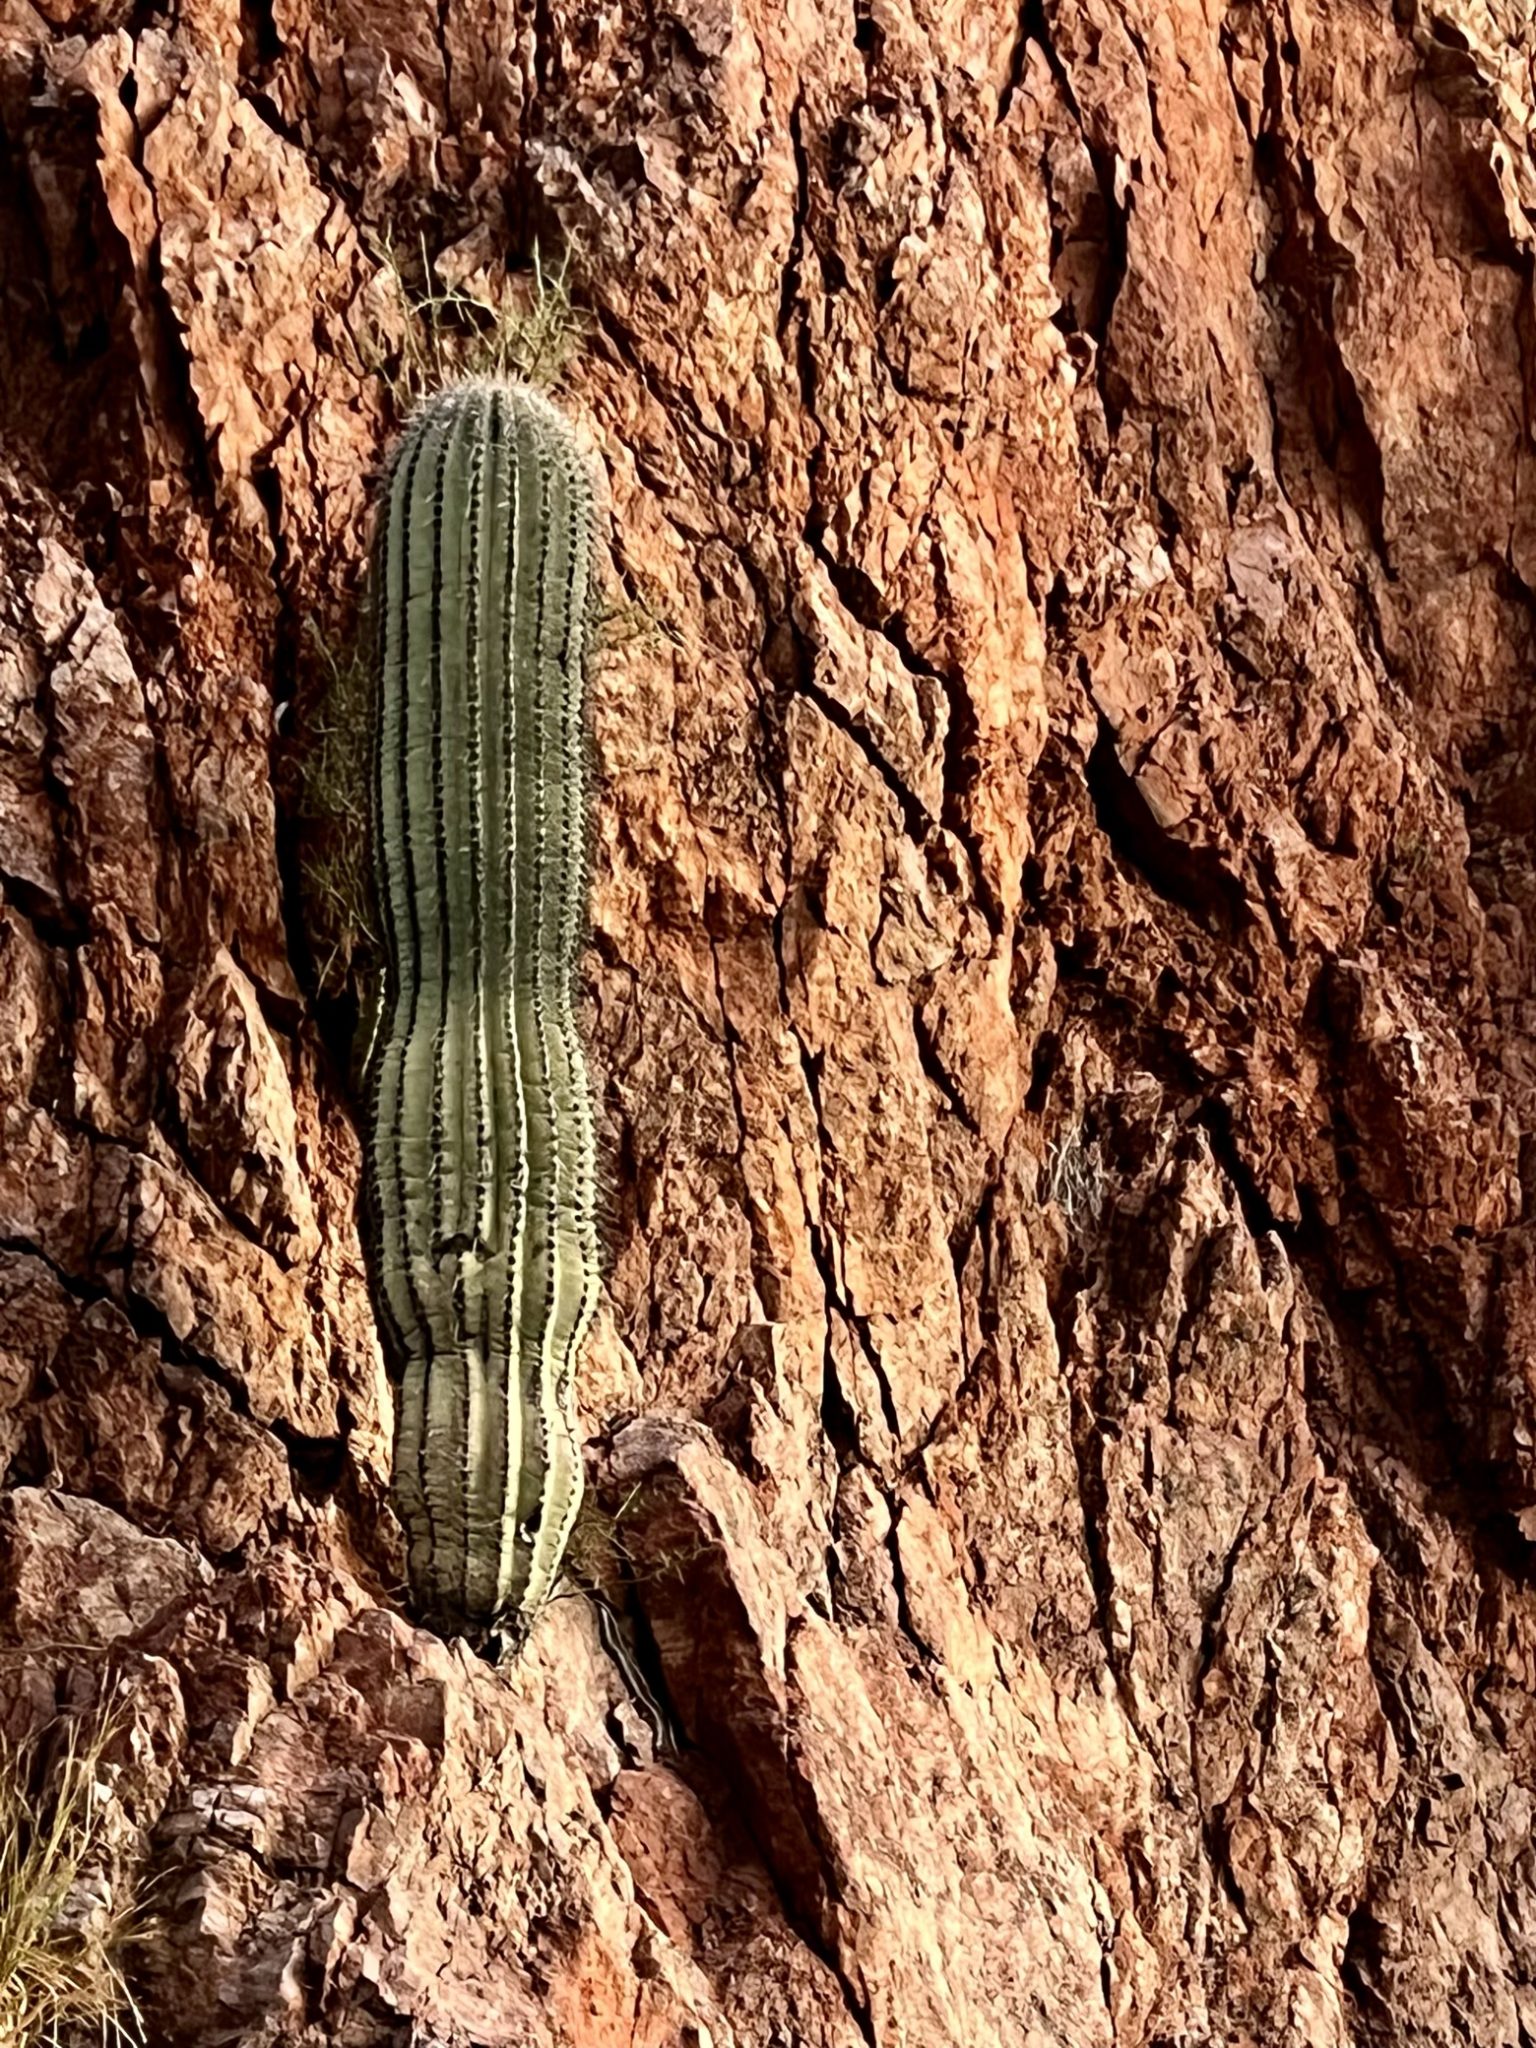 Red cliff saguaro